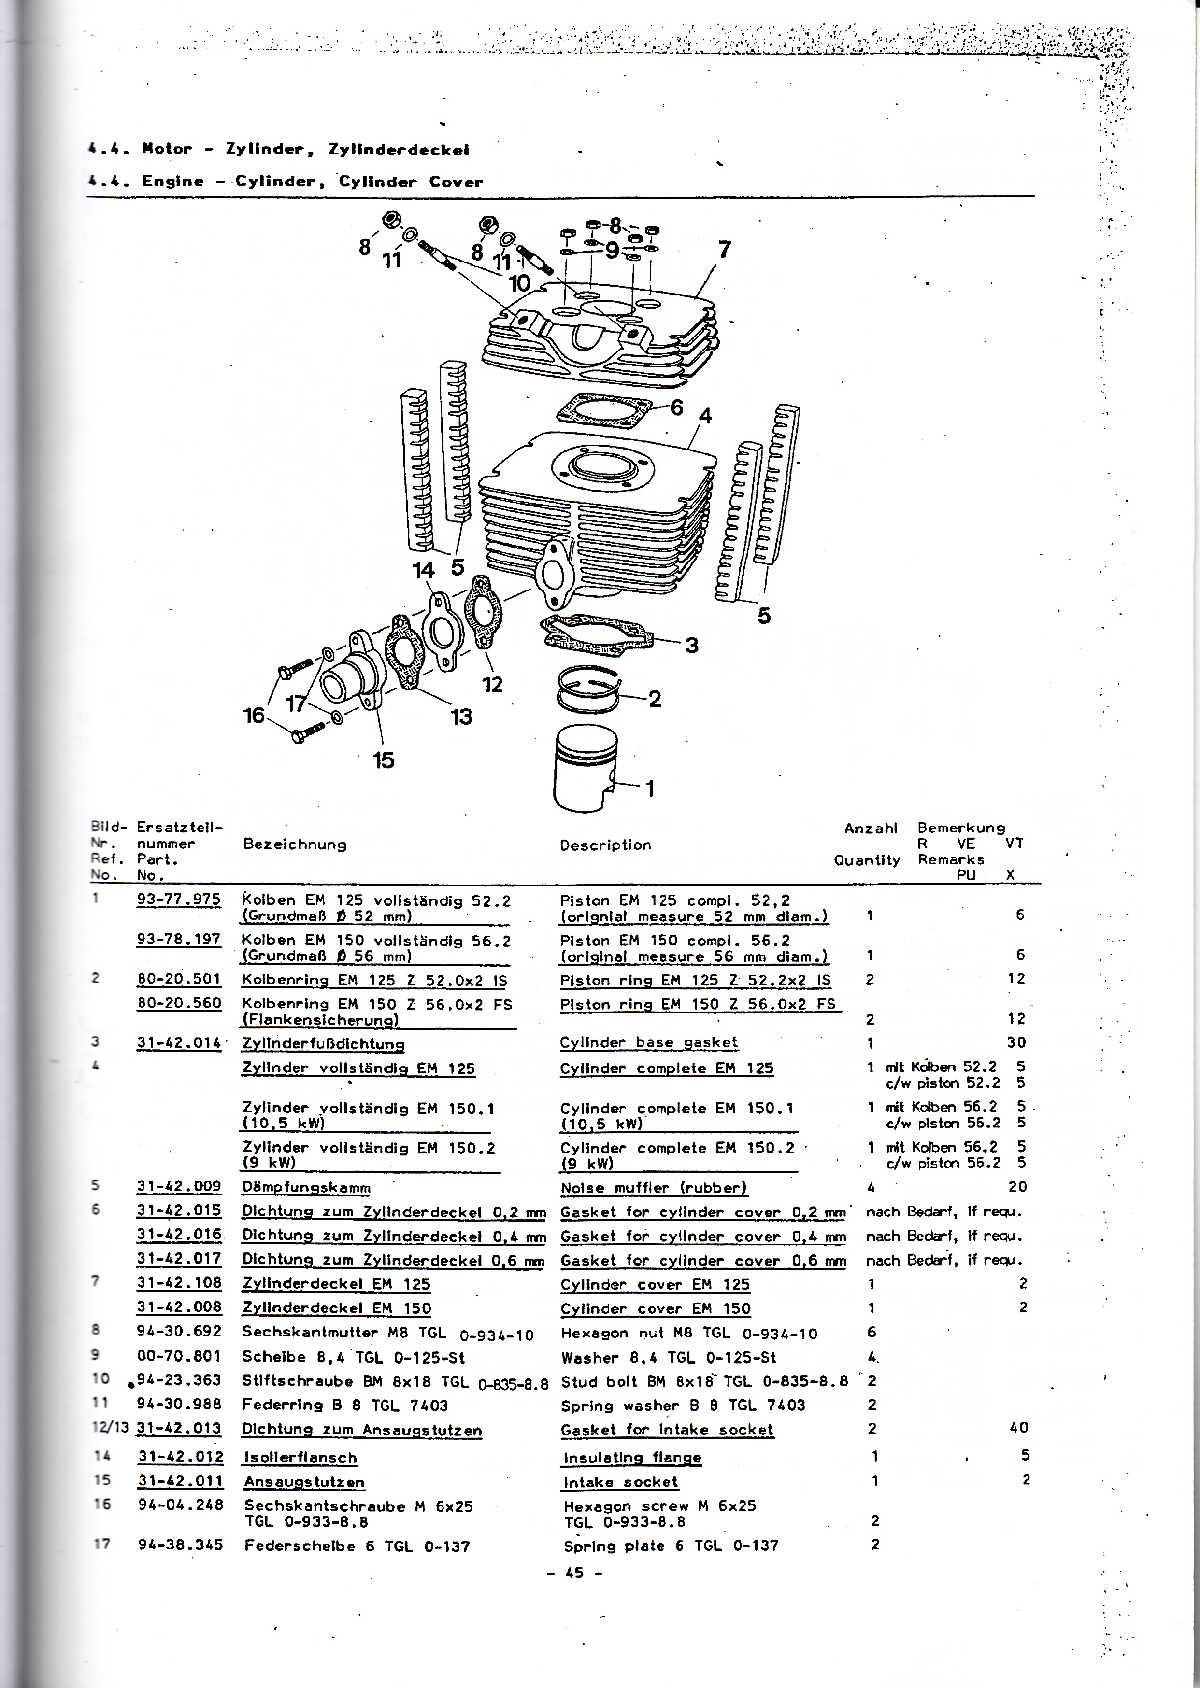 Katalog MZ 150 ETZ, MZ 125 ETZ - 4.4. Motor, válec